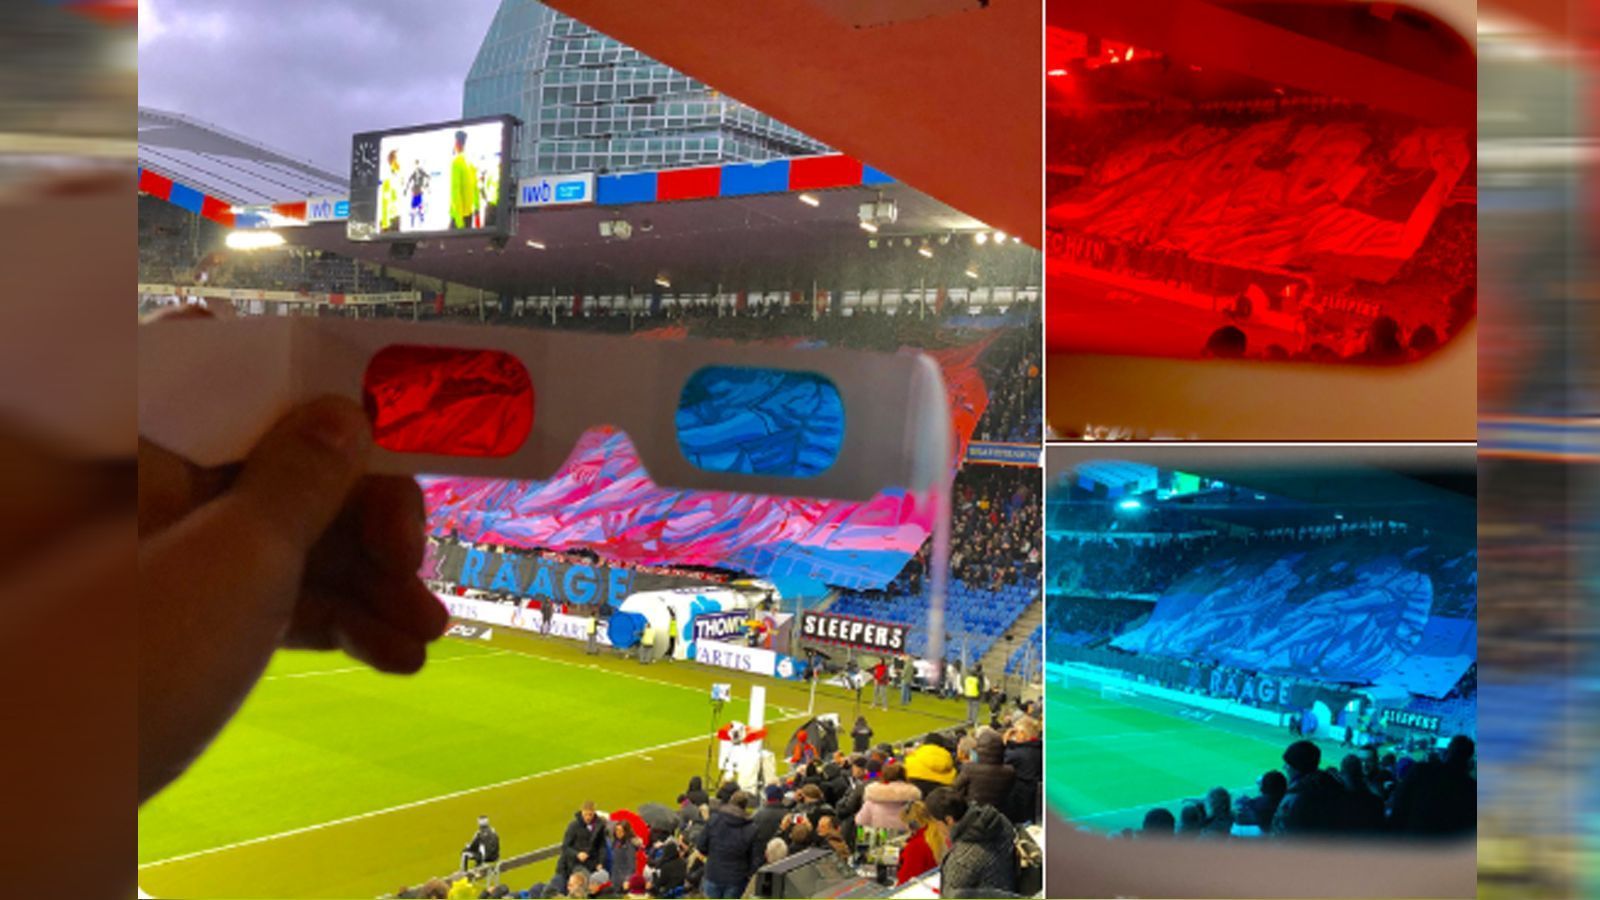 
                <strong>Basel-Fans mit spektakulärer 3D-Choreo</strong><br>
                Überragend! Die Fans des FC Basel zogen vor Anpfiff der Partie gegen den FC Zürich alle Blicke auf sich. Die Muttenzerkurve sorgte mit einer spektakulären 3D-Choreo für Aufsehen. Über den gesamten Fanblock hinweg spannte sich ein riesiges Transparent, auf der sich zwei Motive versteckten. Die zwei Botschaften konnten die Zuschauer im Stadion mittels einer rot-blauen 3D-Brille sehen. Die außergewöhnliche Choreo stand unter dem Motto: "Sonnenschein und Regen". Die rote Seite symbolisierte mit jubelnden Spielern den Sonnenschein, die blaue mit enttäuschten FCB-Profis hingegen den Regen. Nach dem Spiel gab es allen Grund zum Jubeln, die Basler gewannen den Klassiker gegen den FC Zürich mit 2:0. 
              